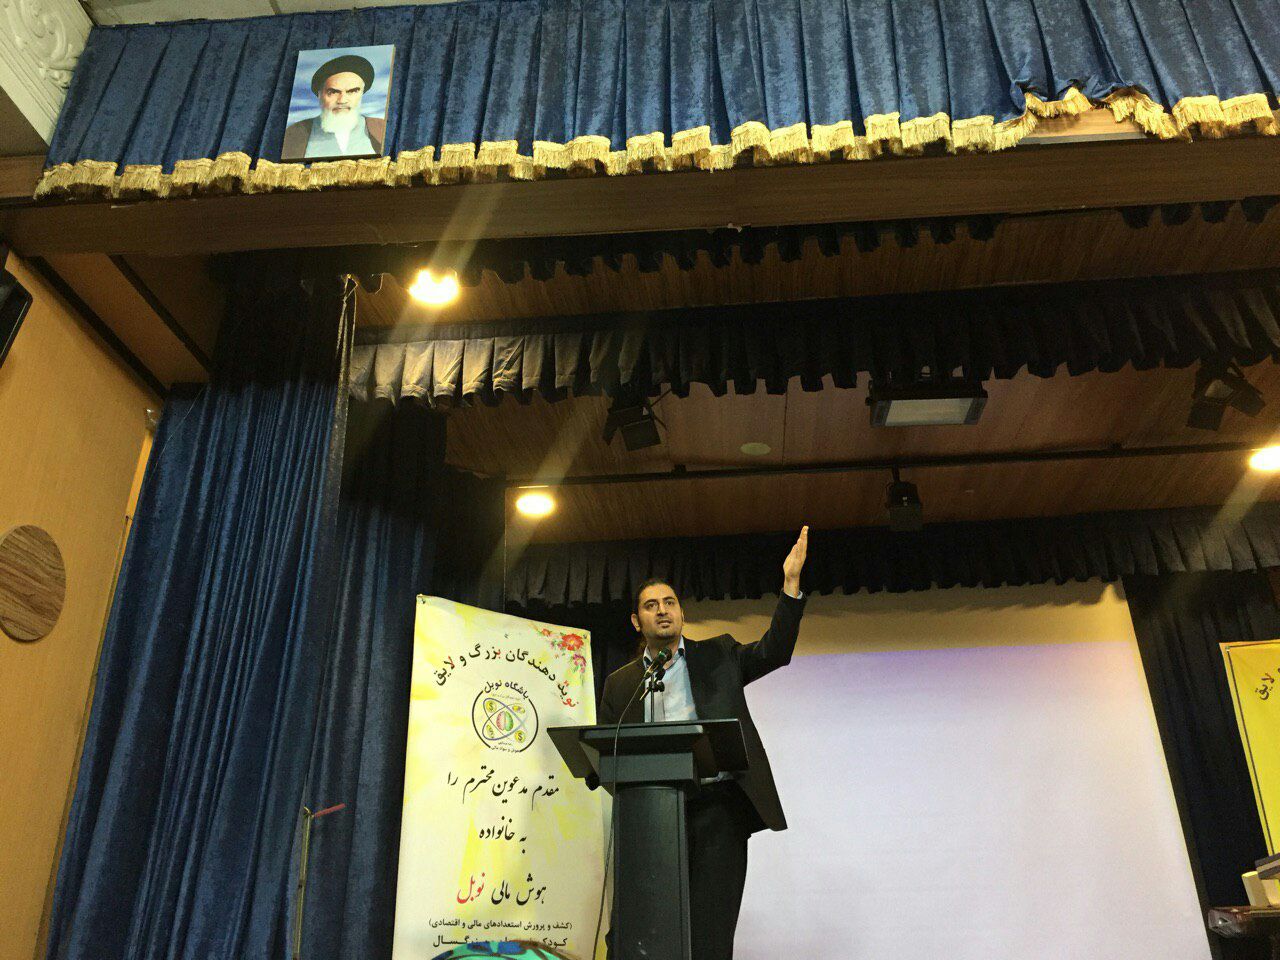 سخنرانی علی خادم الرضا در باشگاه نوبل- قیطریه